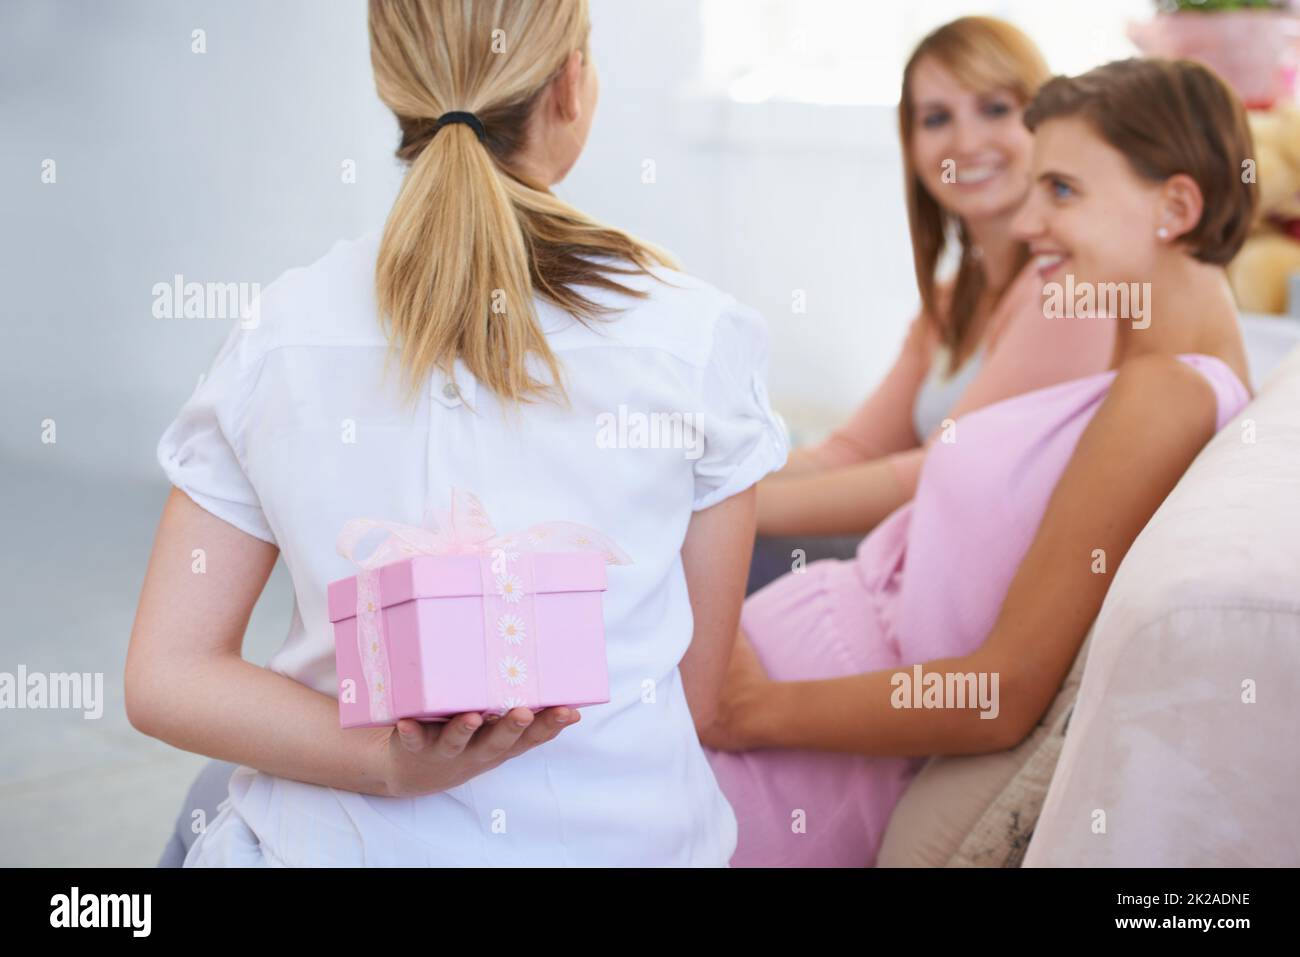 Prolungamento dell'attesa. Una giovane donna che nasconde un regalo dietro la schiena ai suoi amici babyshower. Foto Stock